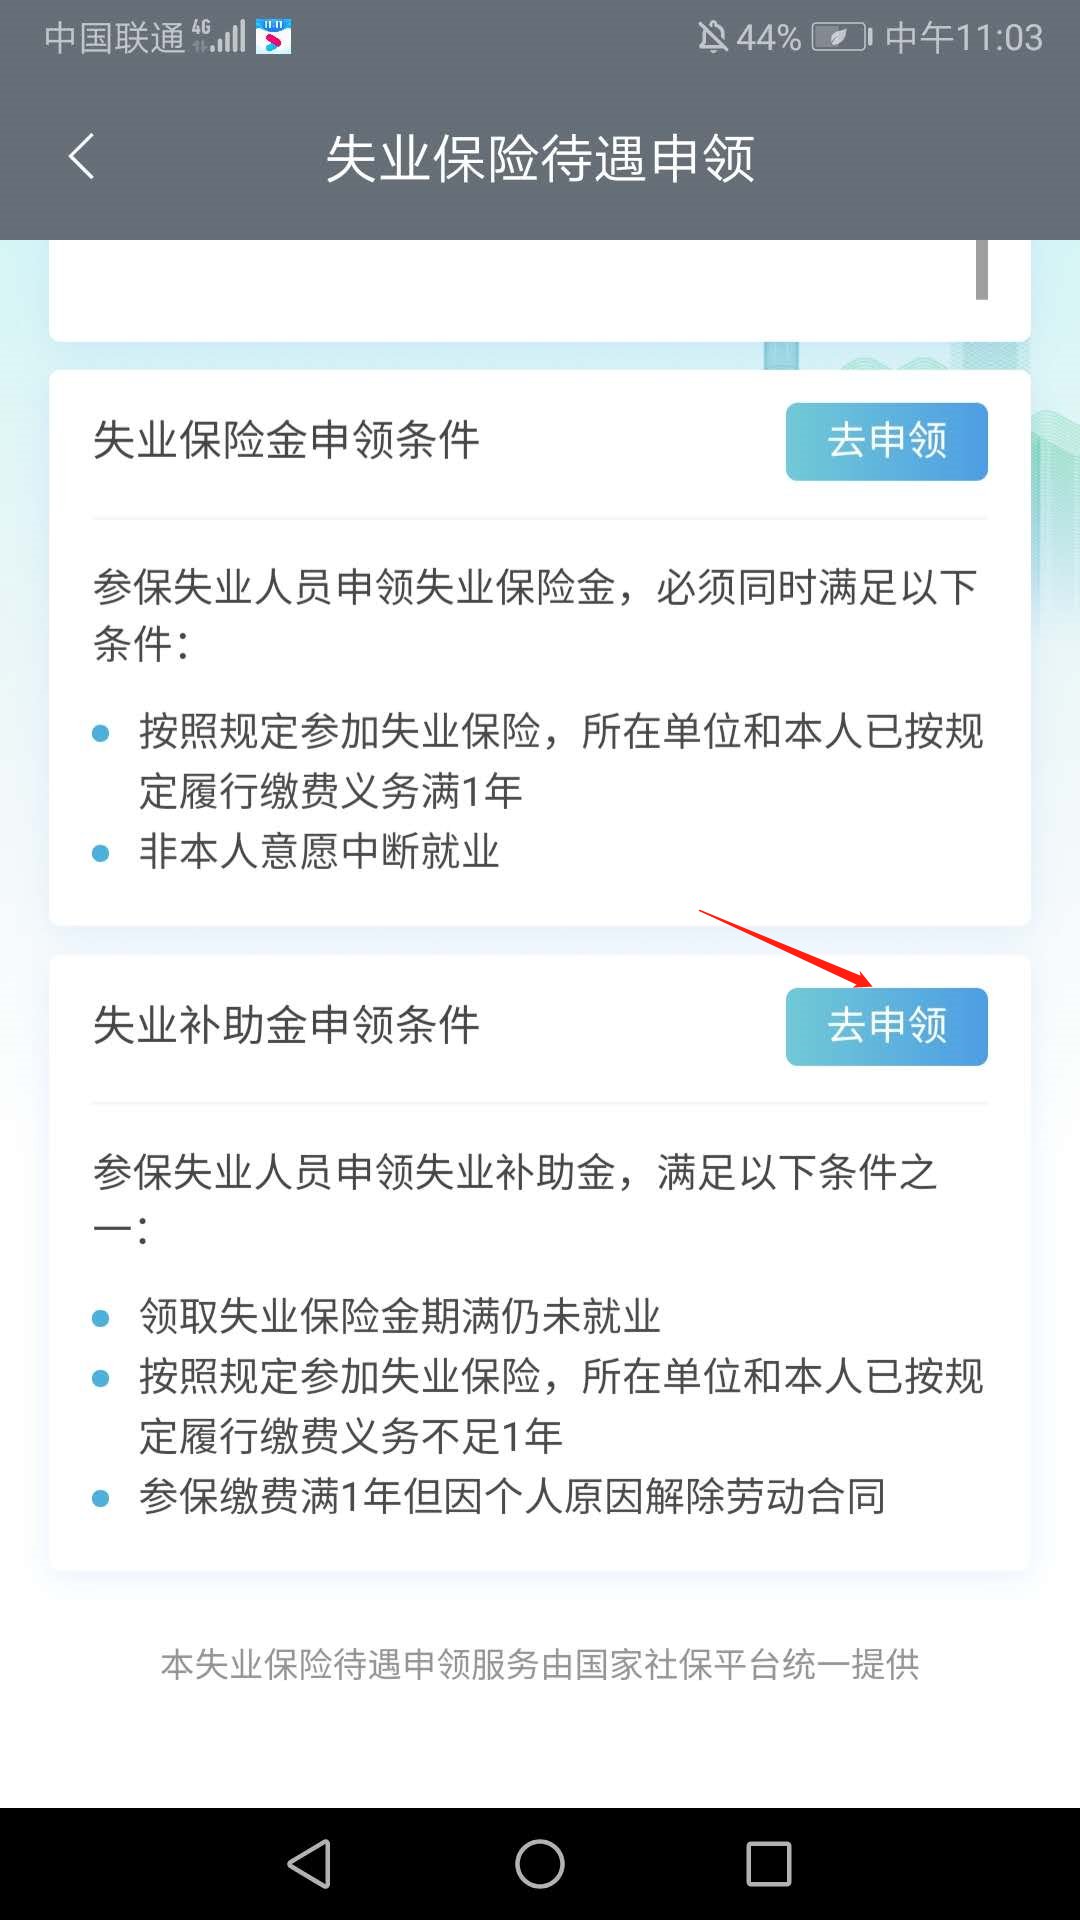 2020年天津失业补助金申请指南 符合条件可申请